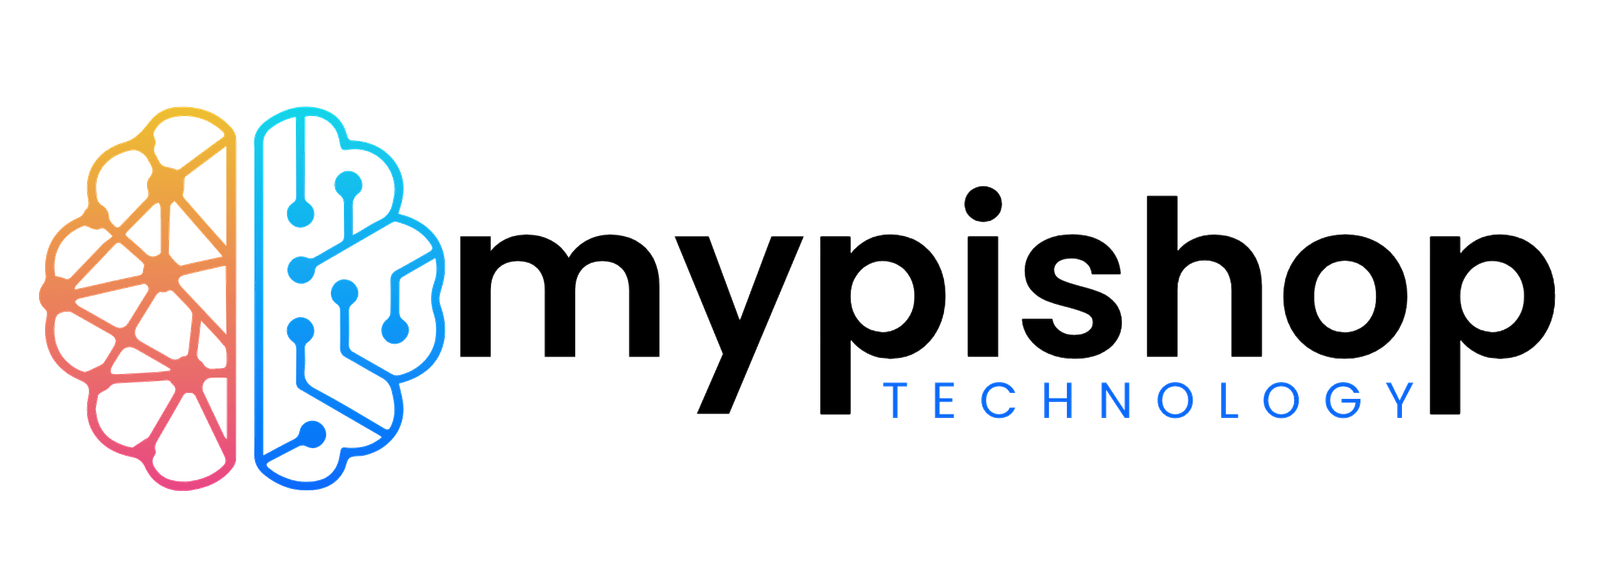 mypishop.com